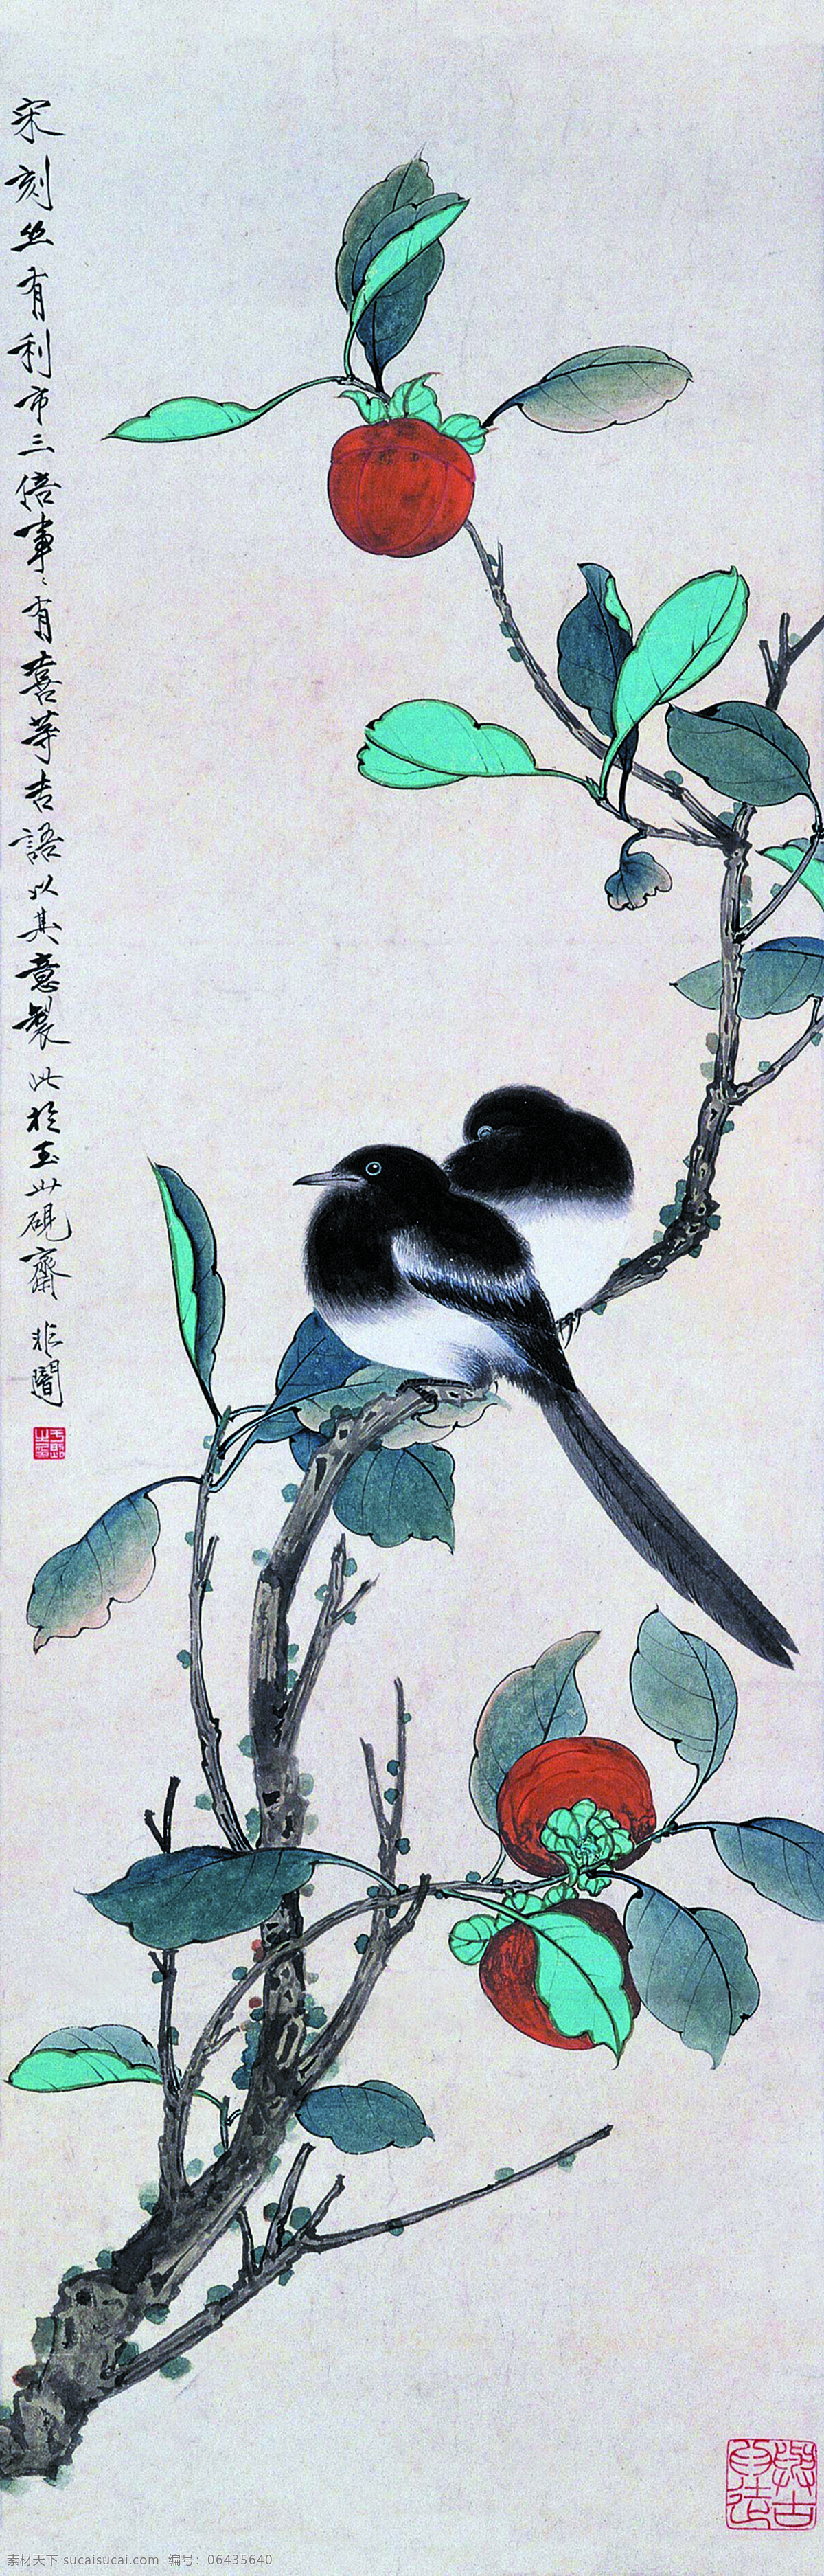 世世有喜 美术 中国画 工笔画 柿子 喜鹊 于非暗工笔画 文化艺术 绘画书法